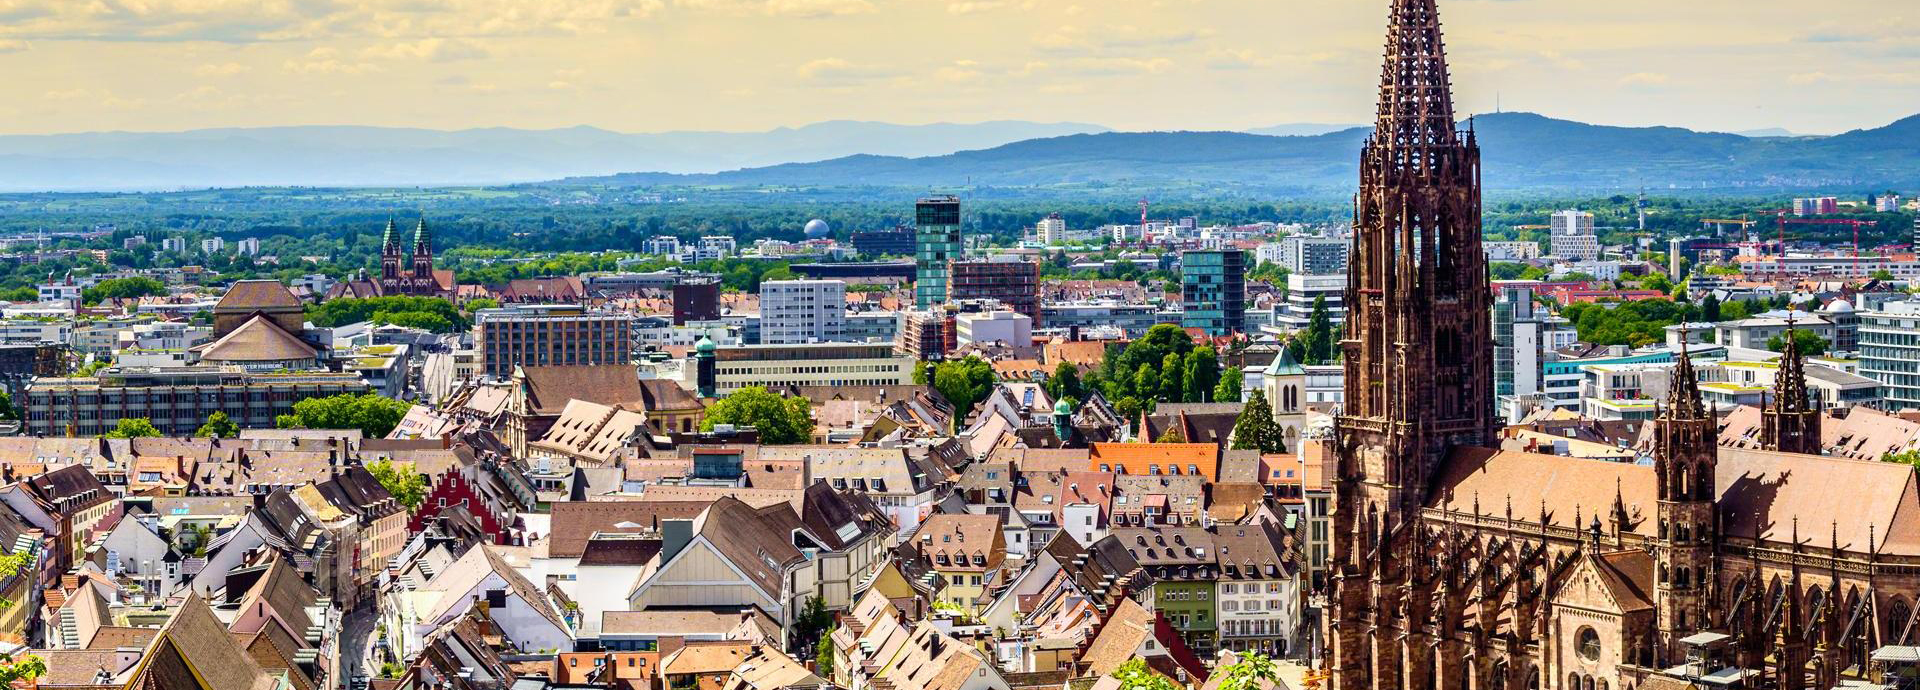 Freiburg im Breisgau deutsche Stadt